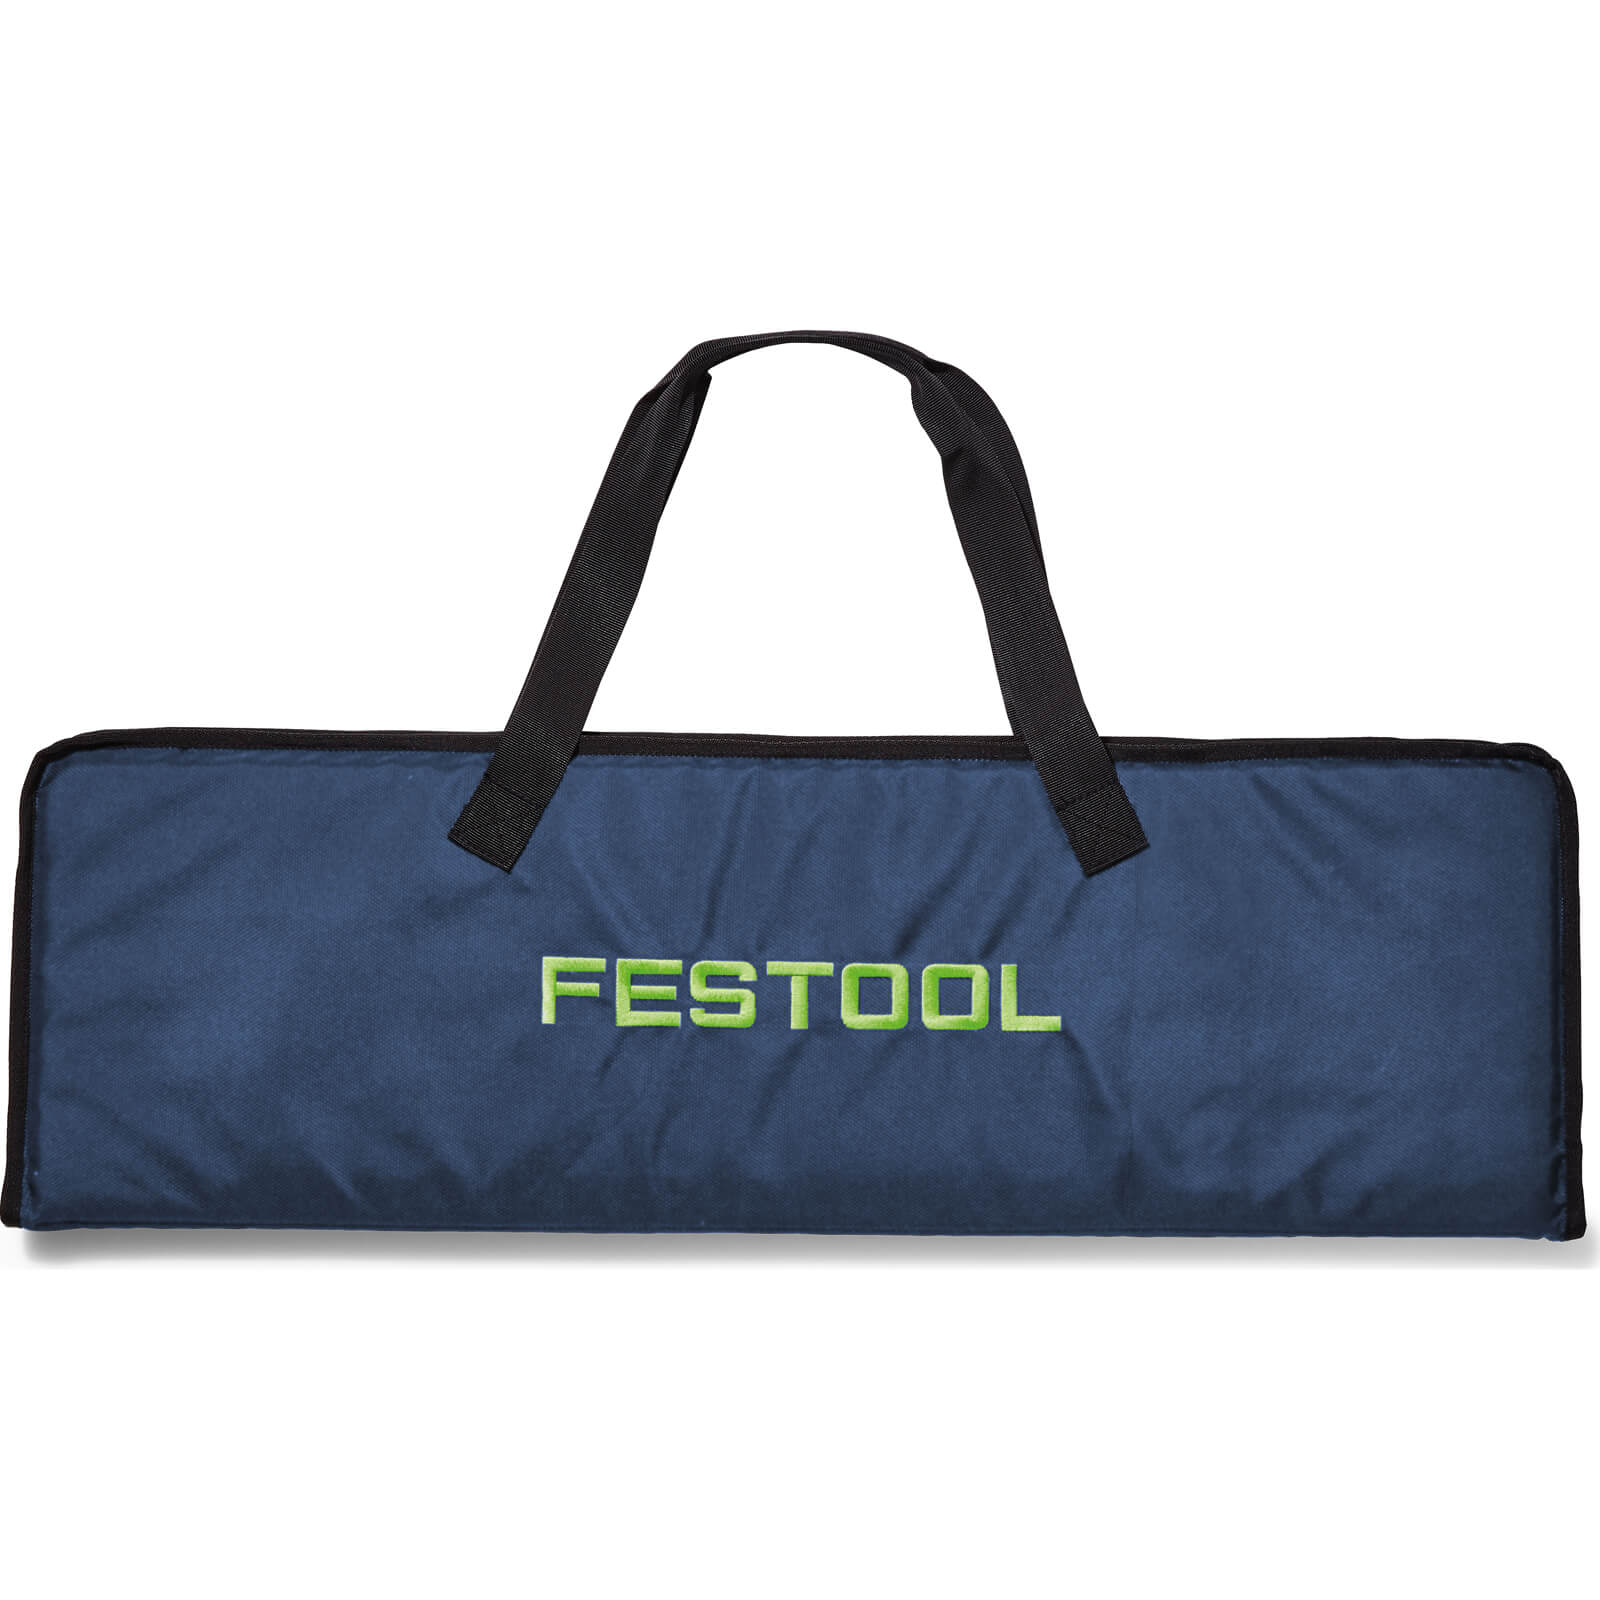 Image of Festool FSK Guide Rail Carry Bag